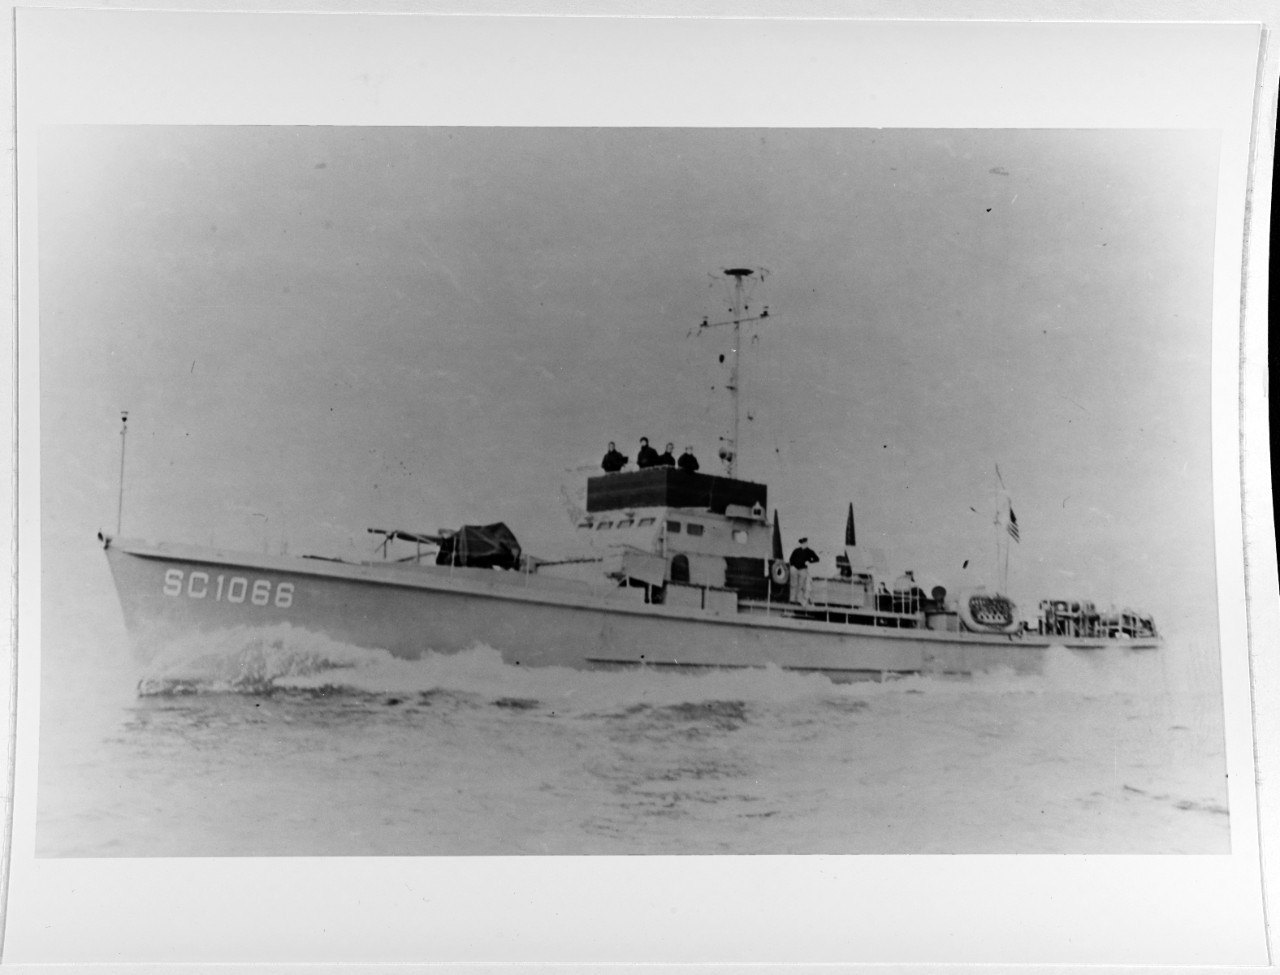 USS SC-1066